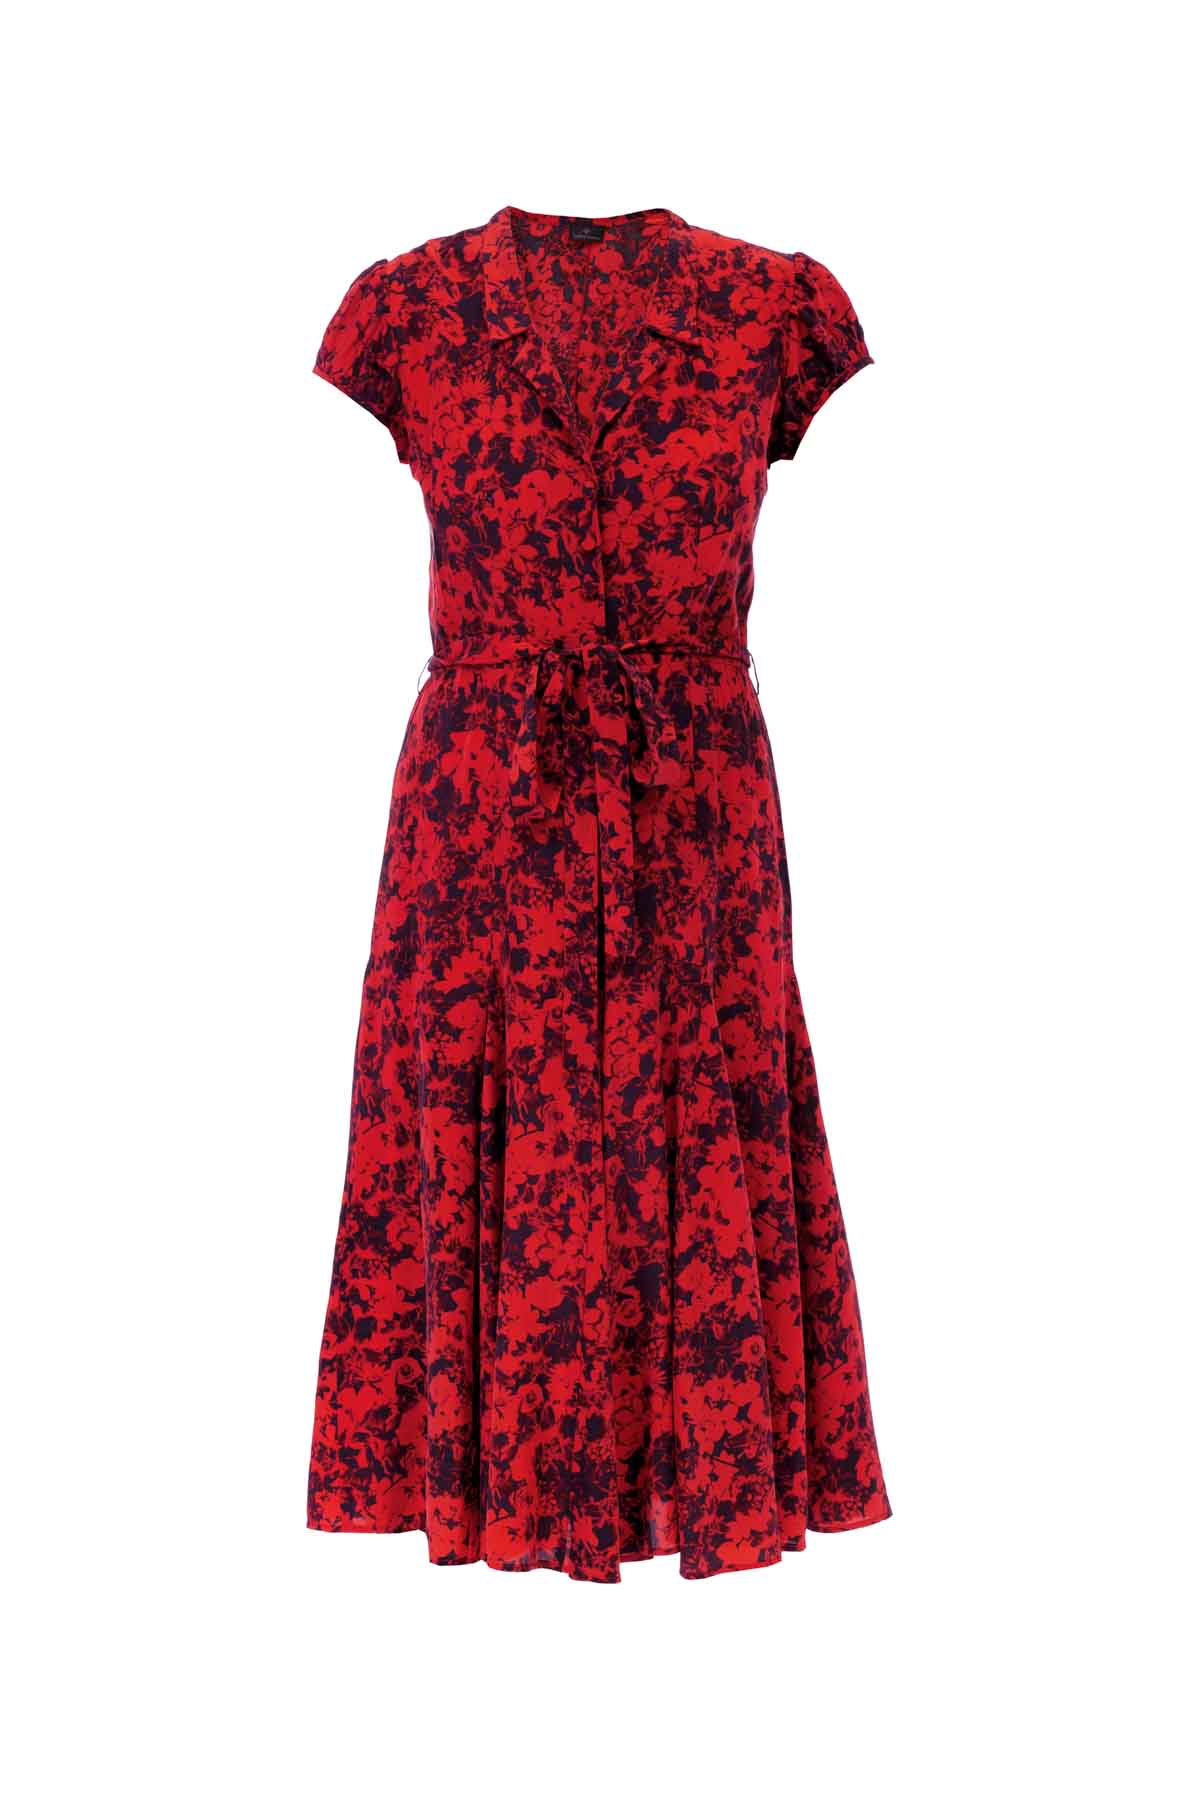 Silk Bugesha Dress - Red Floral